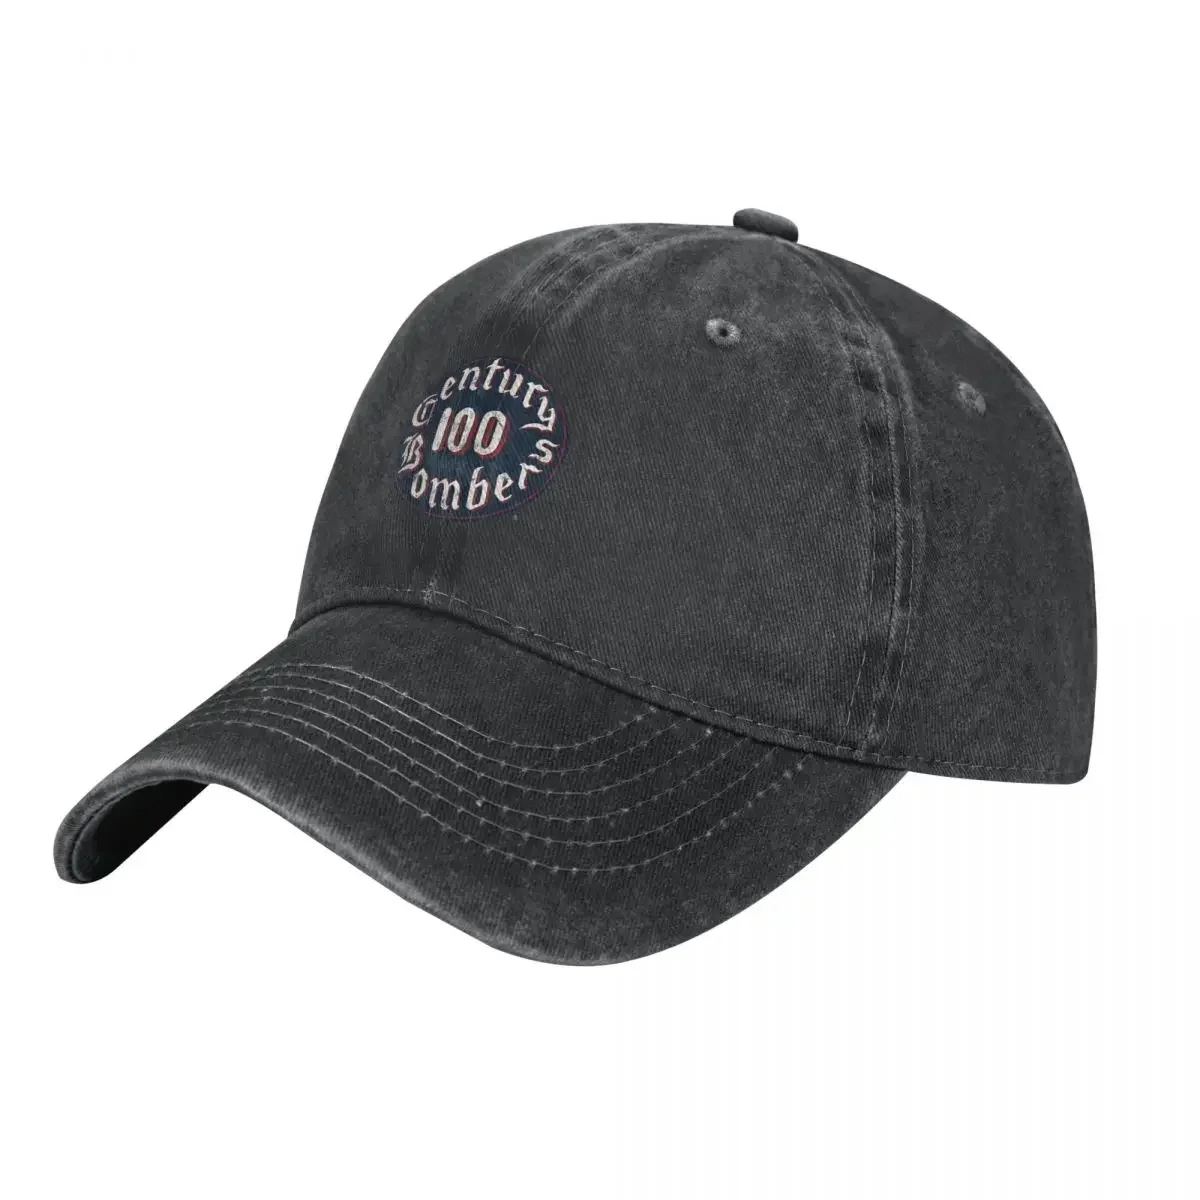 

Официальная Лицензированная 100 бомба, Ранняя ковбойская шляпа, походная шляпа, регби, шляпа для гольфа, солнцезащитные женские шляпы для мужчин